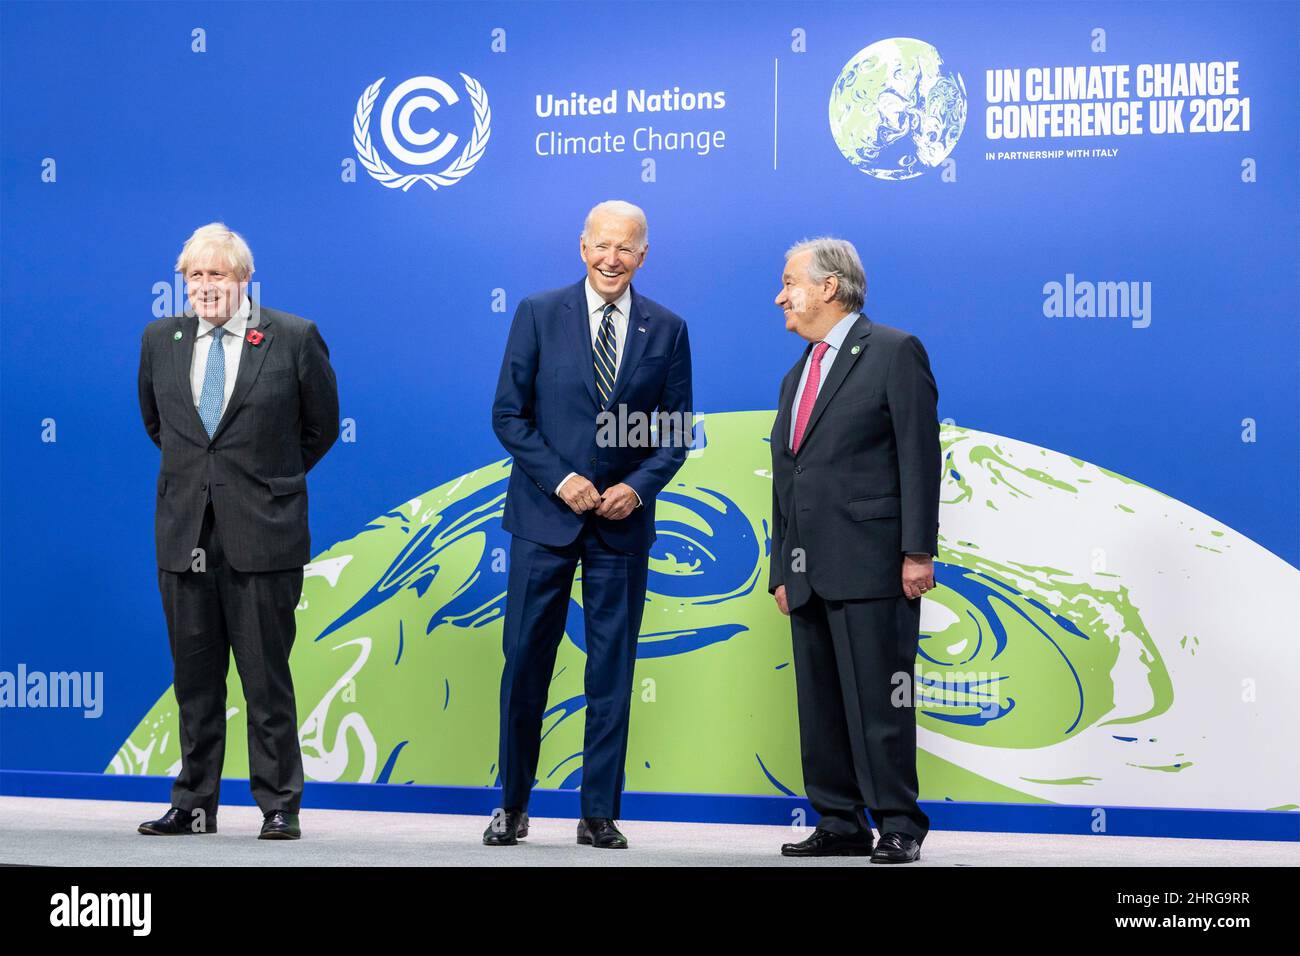 Il presidente degli Stati Uniti Joe Biden si presenta per le foto con il primo ministro britannico Boris Johnson, a sinistra, e il Segretario generale delle Nazioni Unite Antonio Guterres, alla Conferenza sul cambiamento climatico delle Nazioni Unite del COP26 presso lo Scottish Event Campus, 1 novembre 2021 a Glasgow, Scozia. Foto Stock